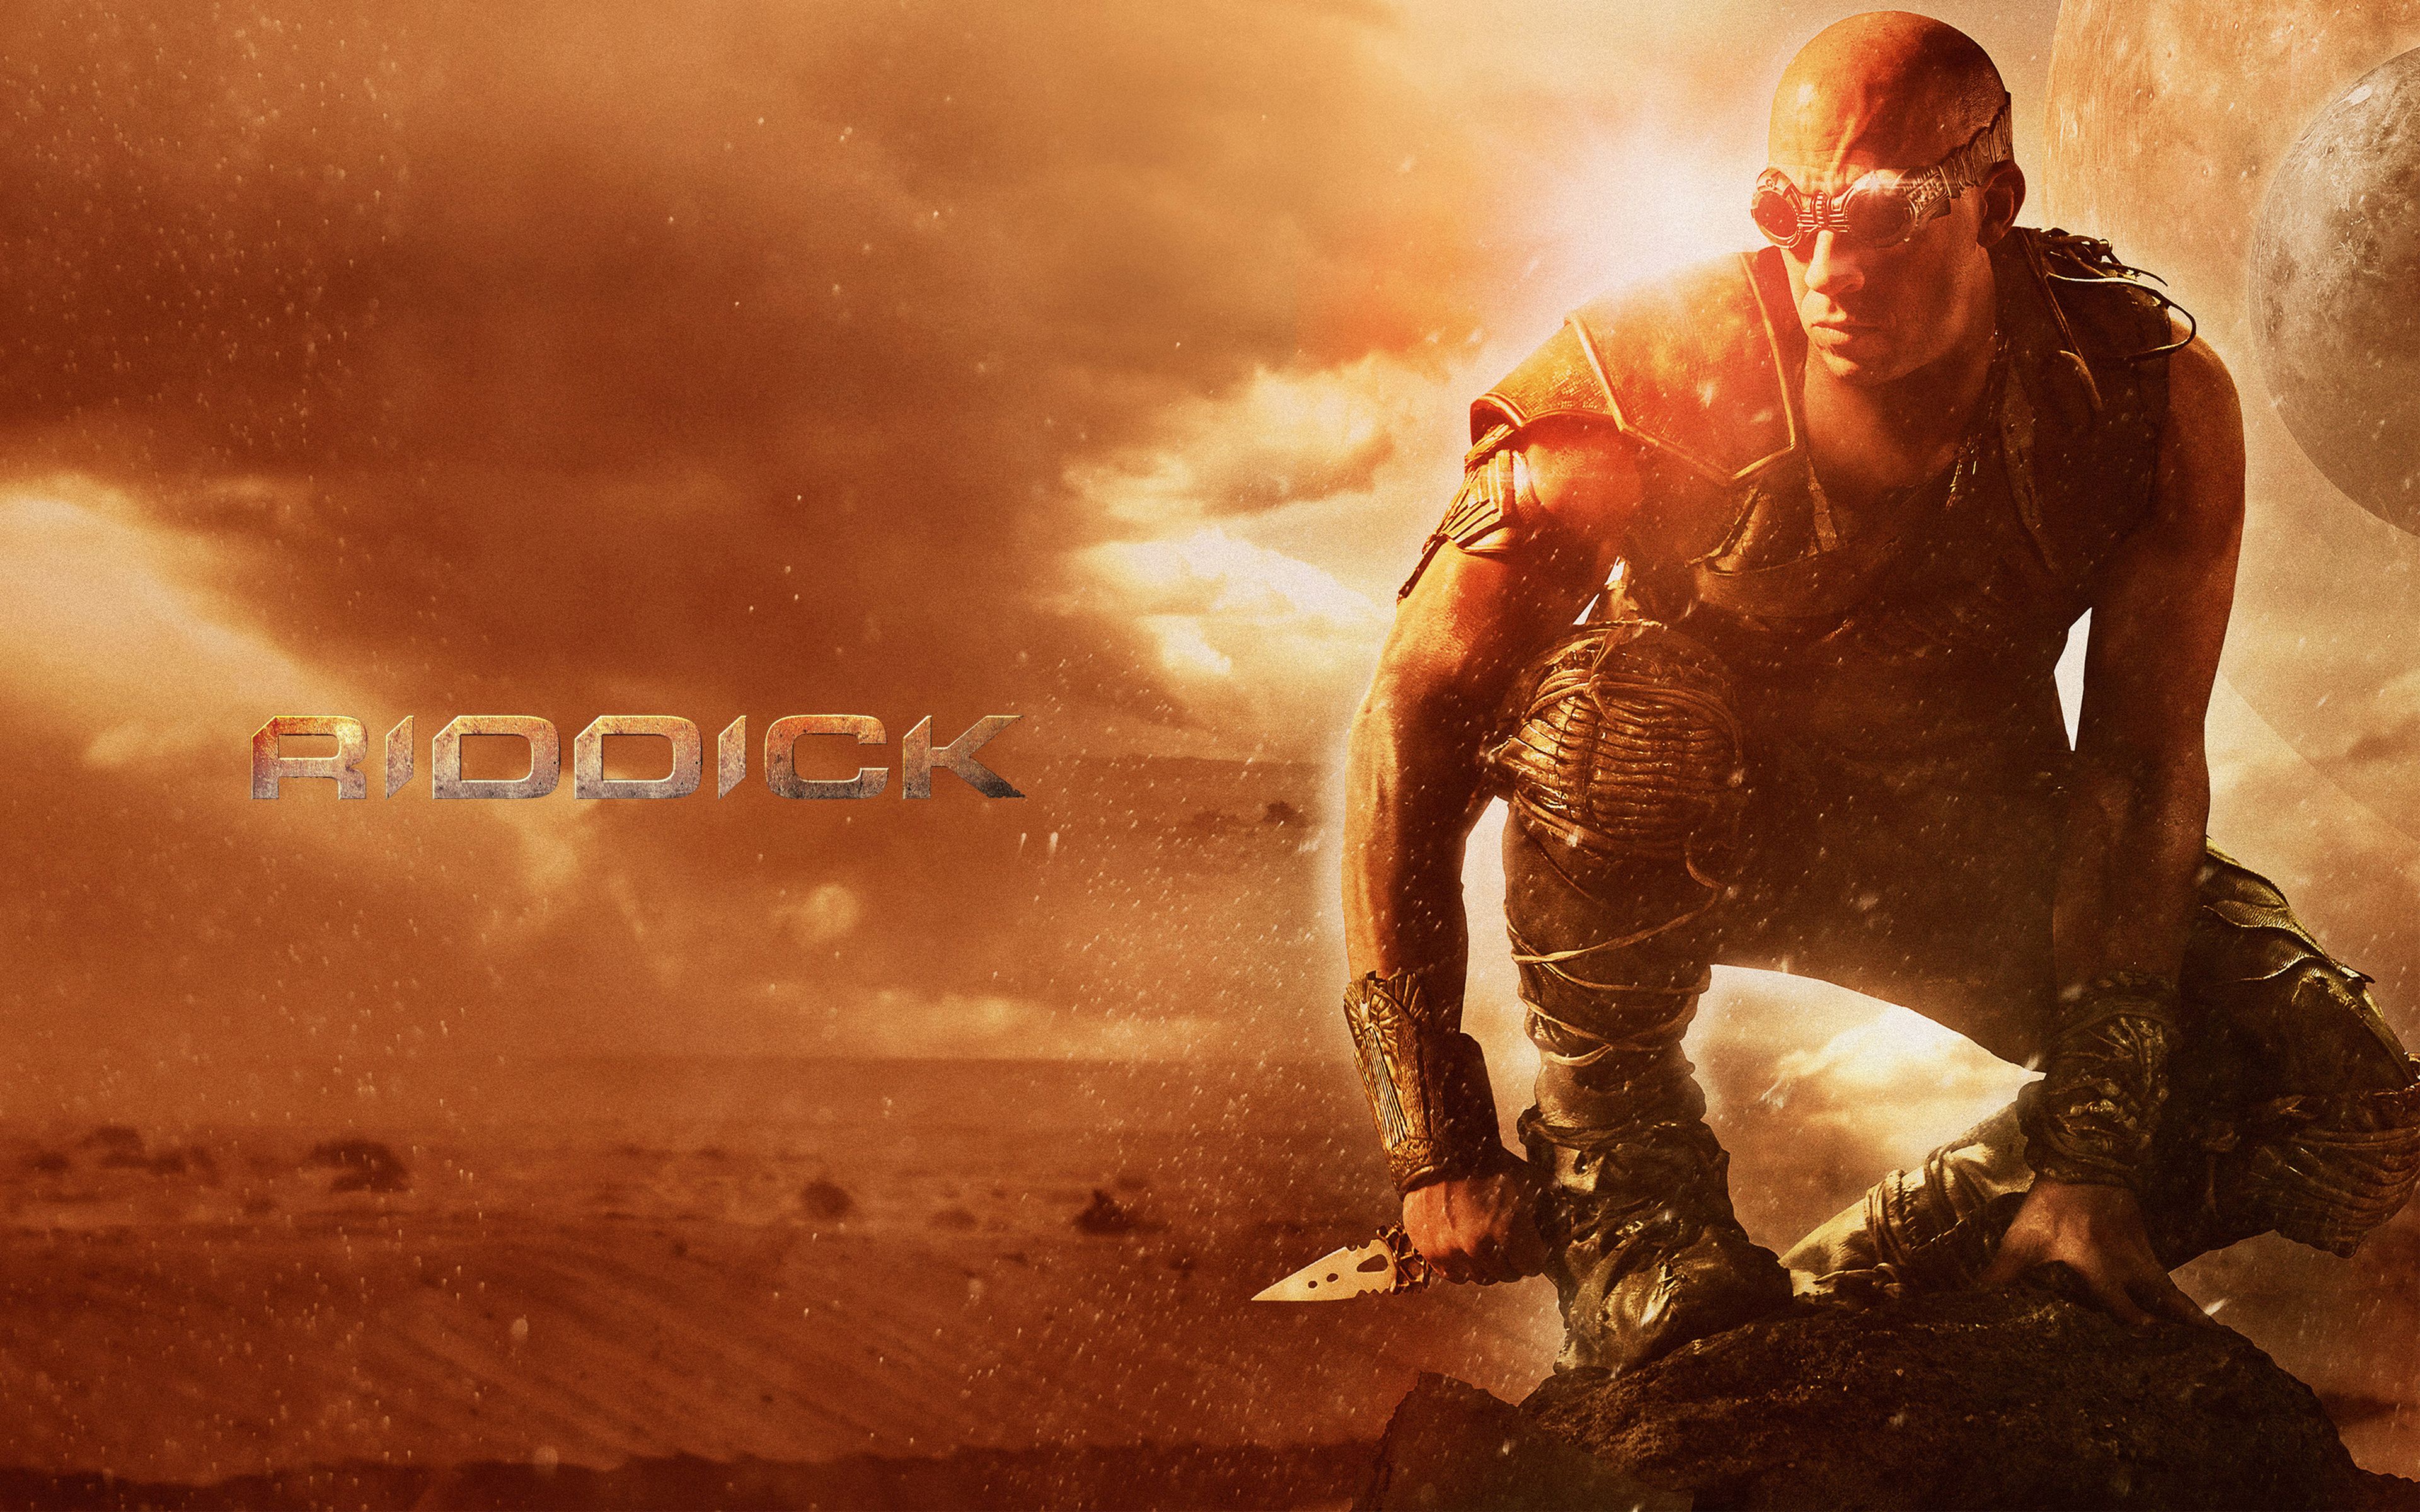 Riddick 4 en marcha junto a un spin-off para televisión según confirma Vin Diesel